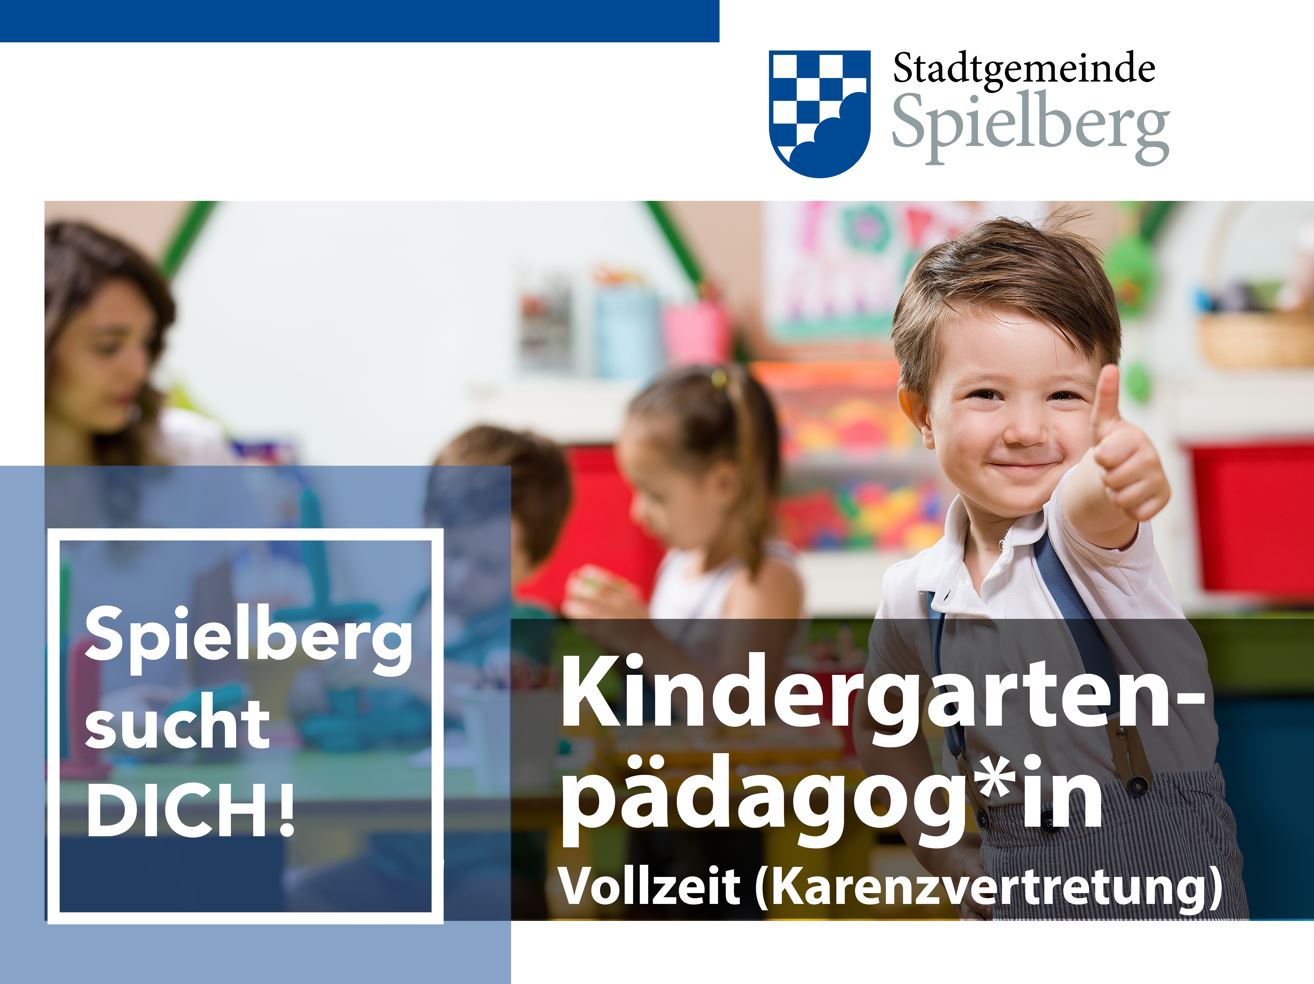 Wir suchen Verstärkung: Kindergartenpädagog:in (Vollzeit/Karenzvertretung)